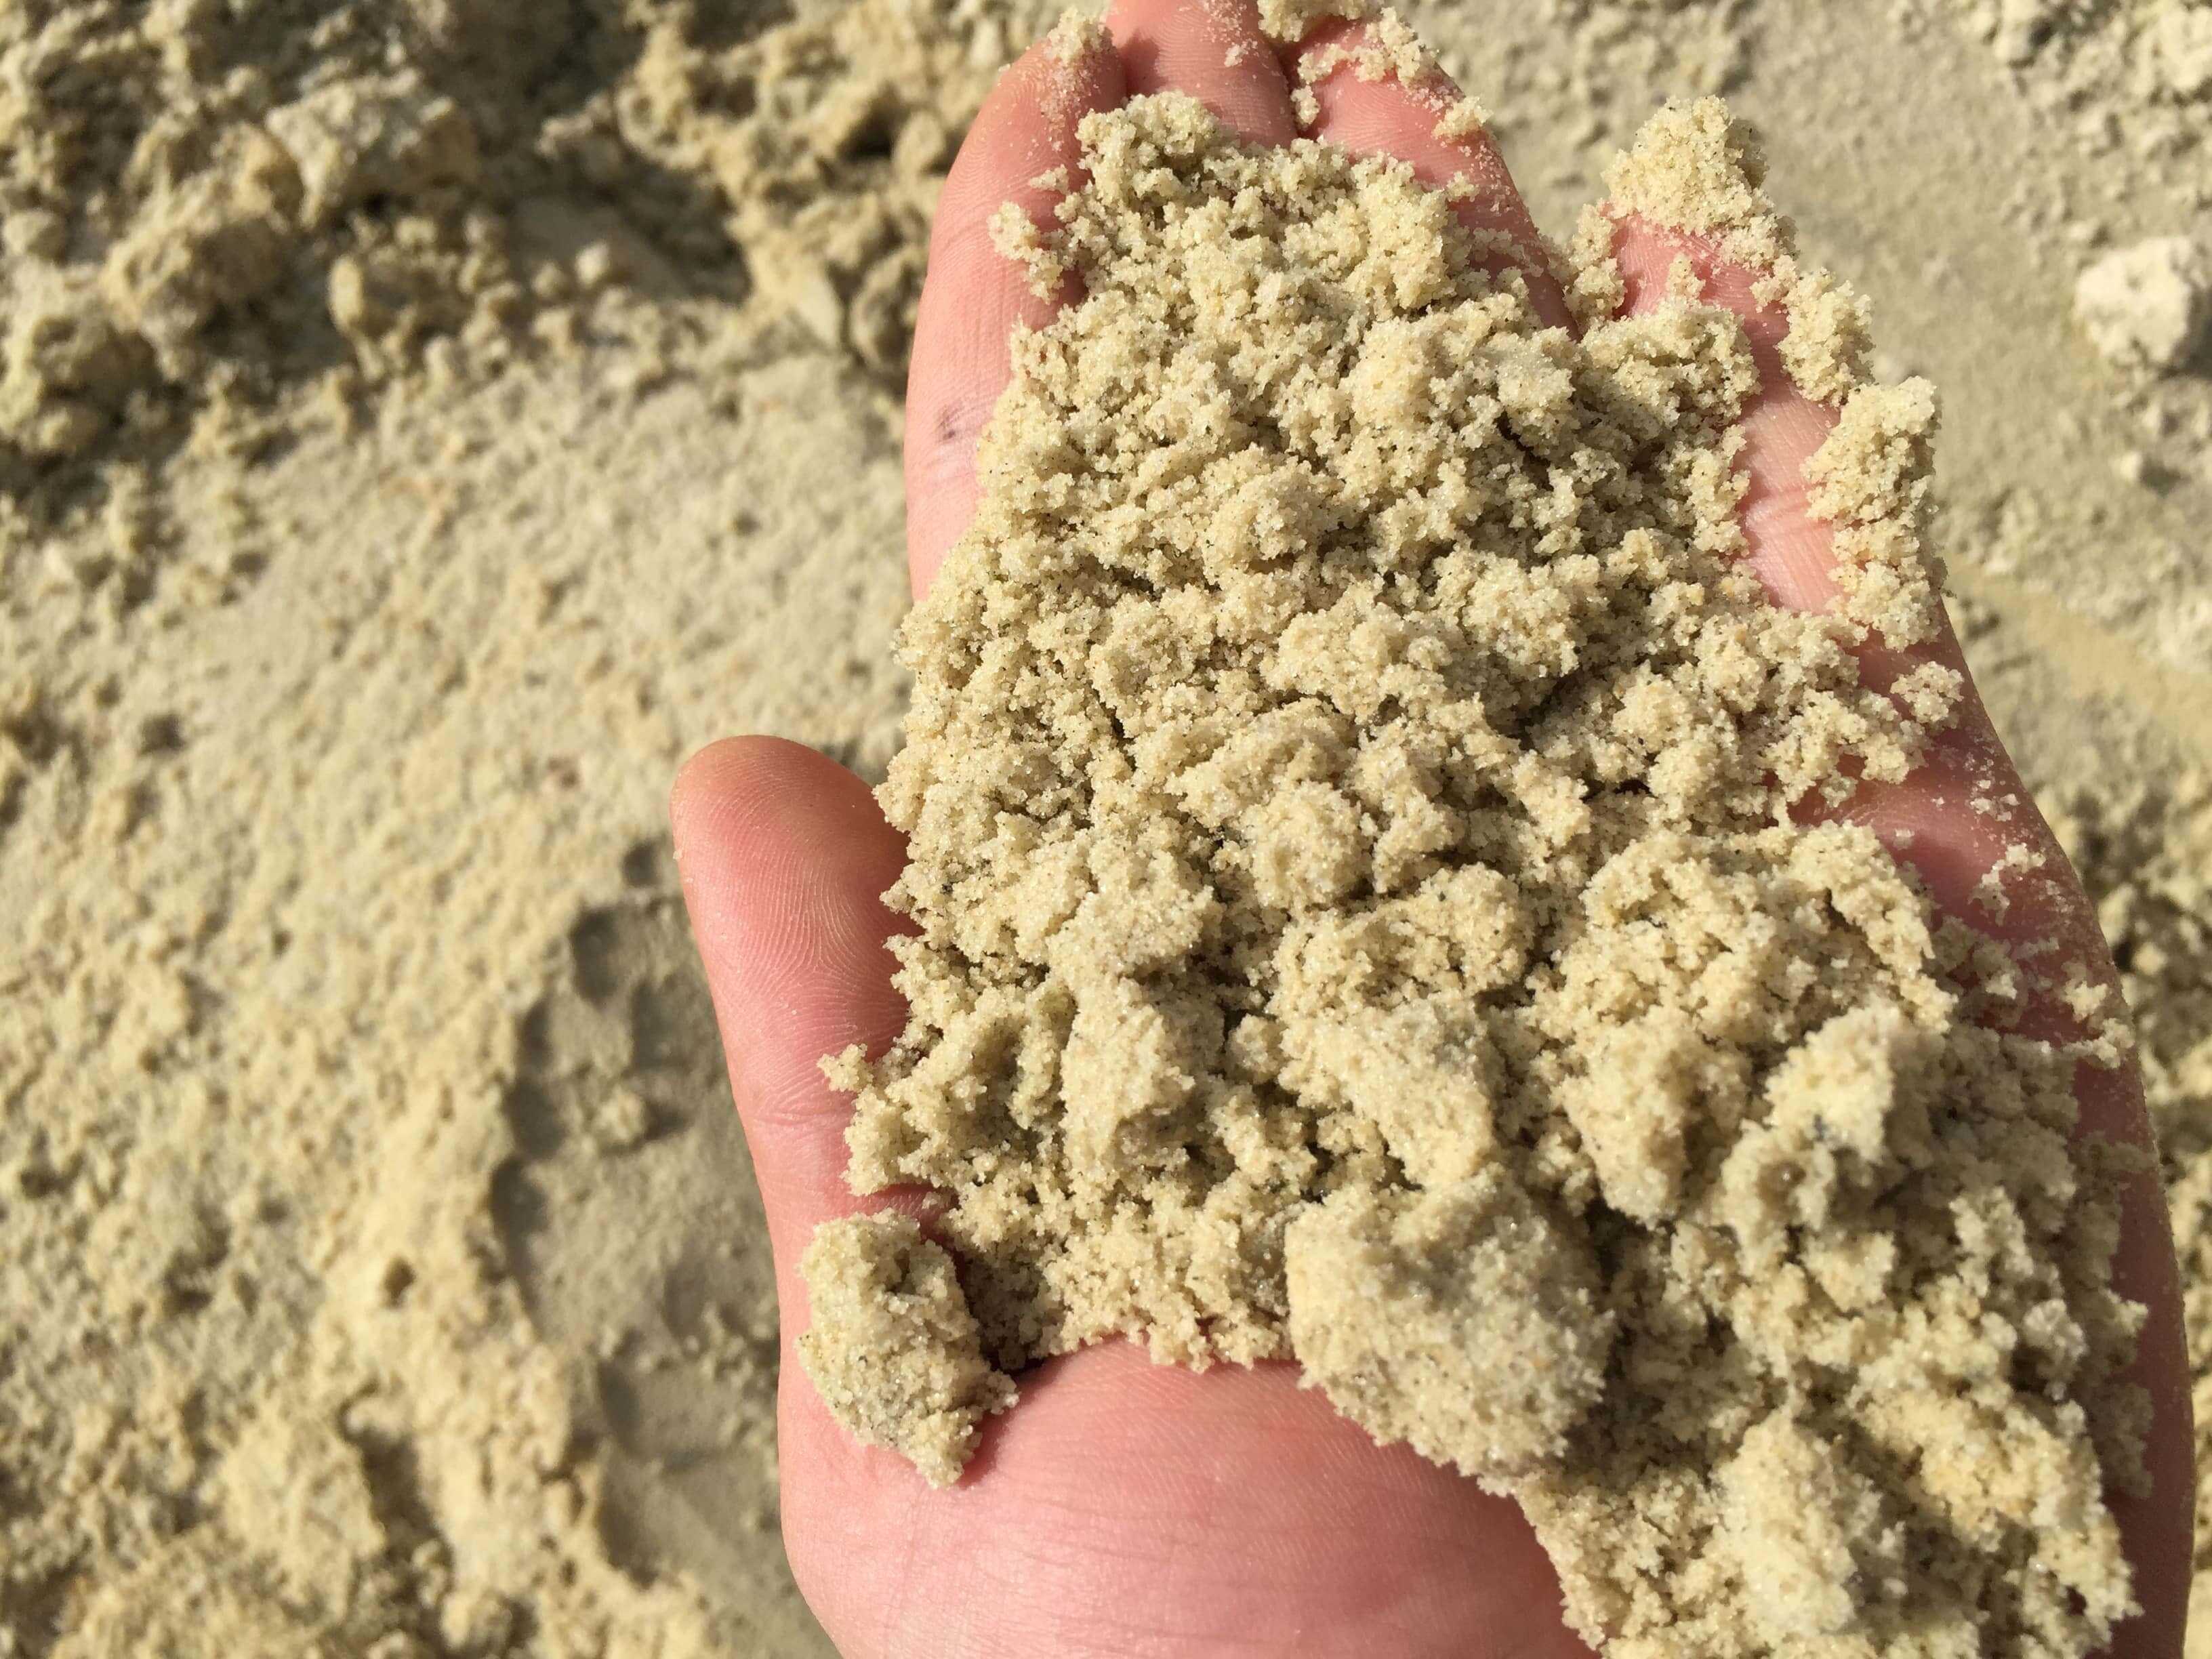 Марки и виды строительного песка, их особенности